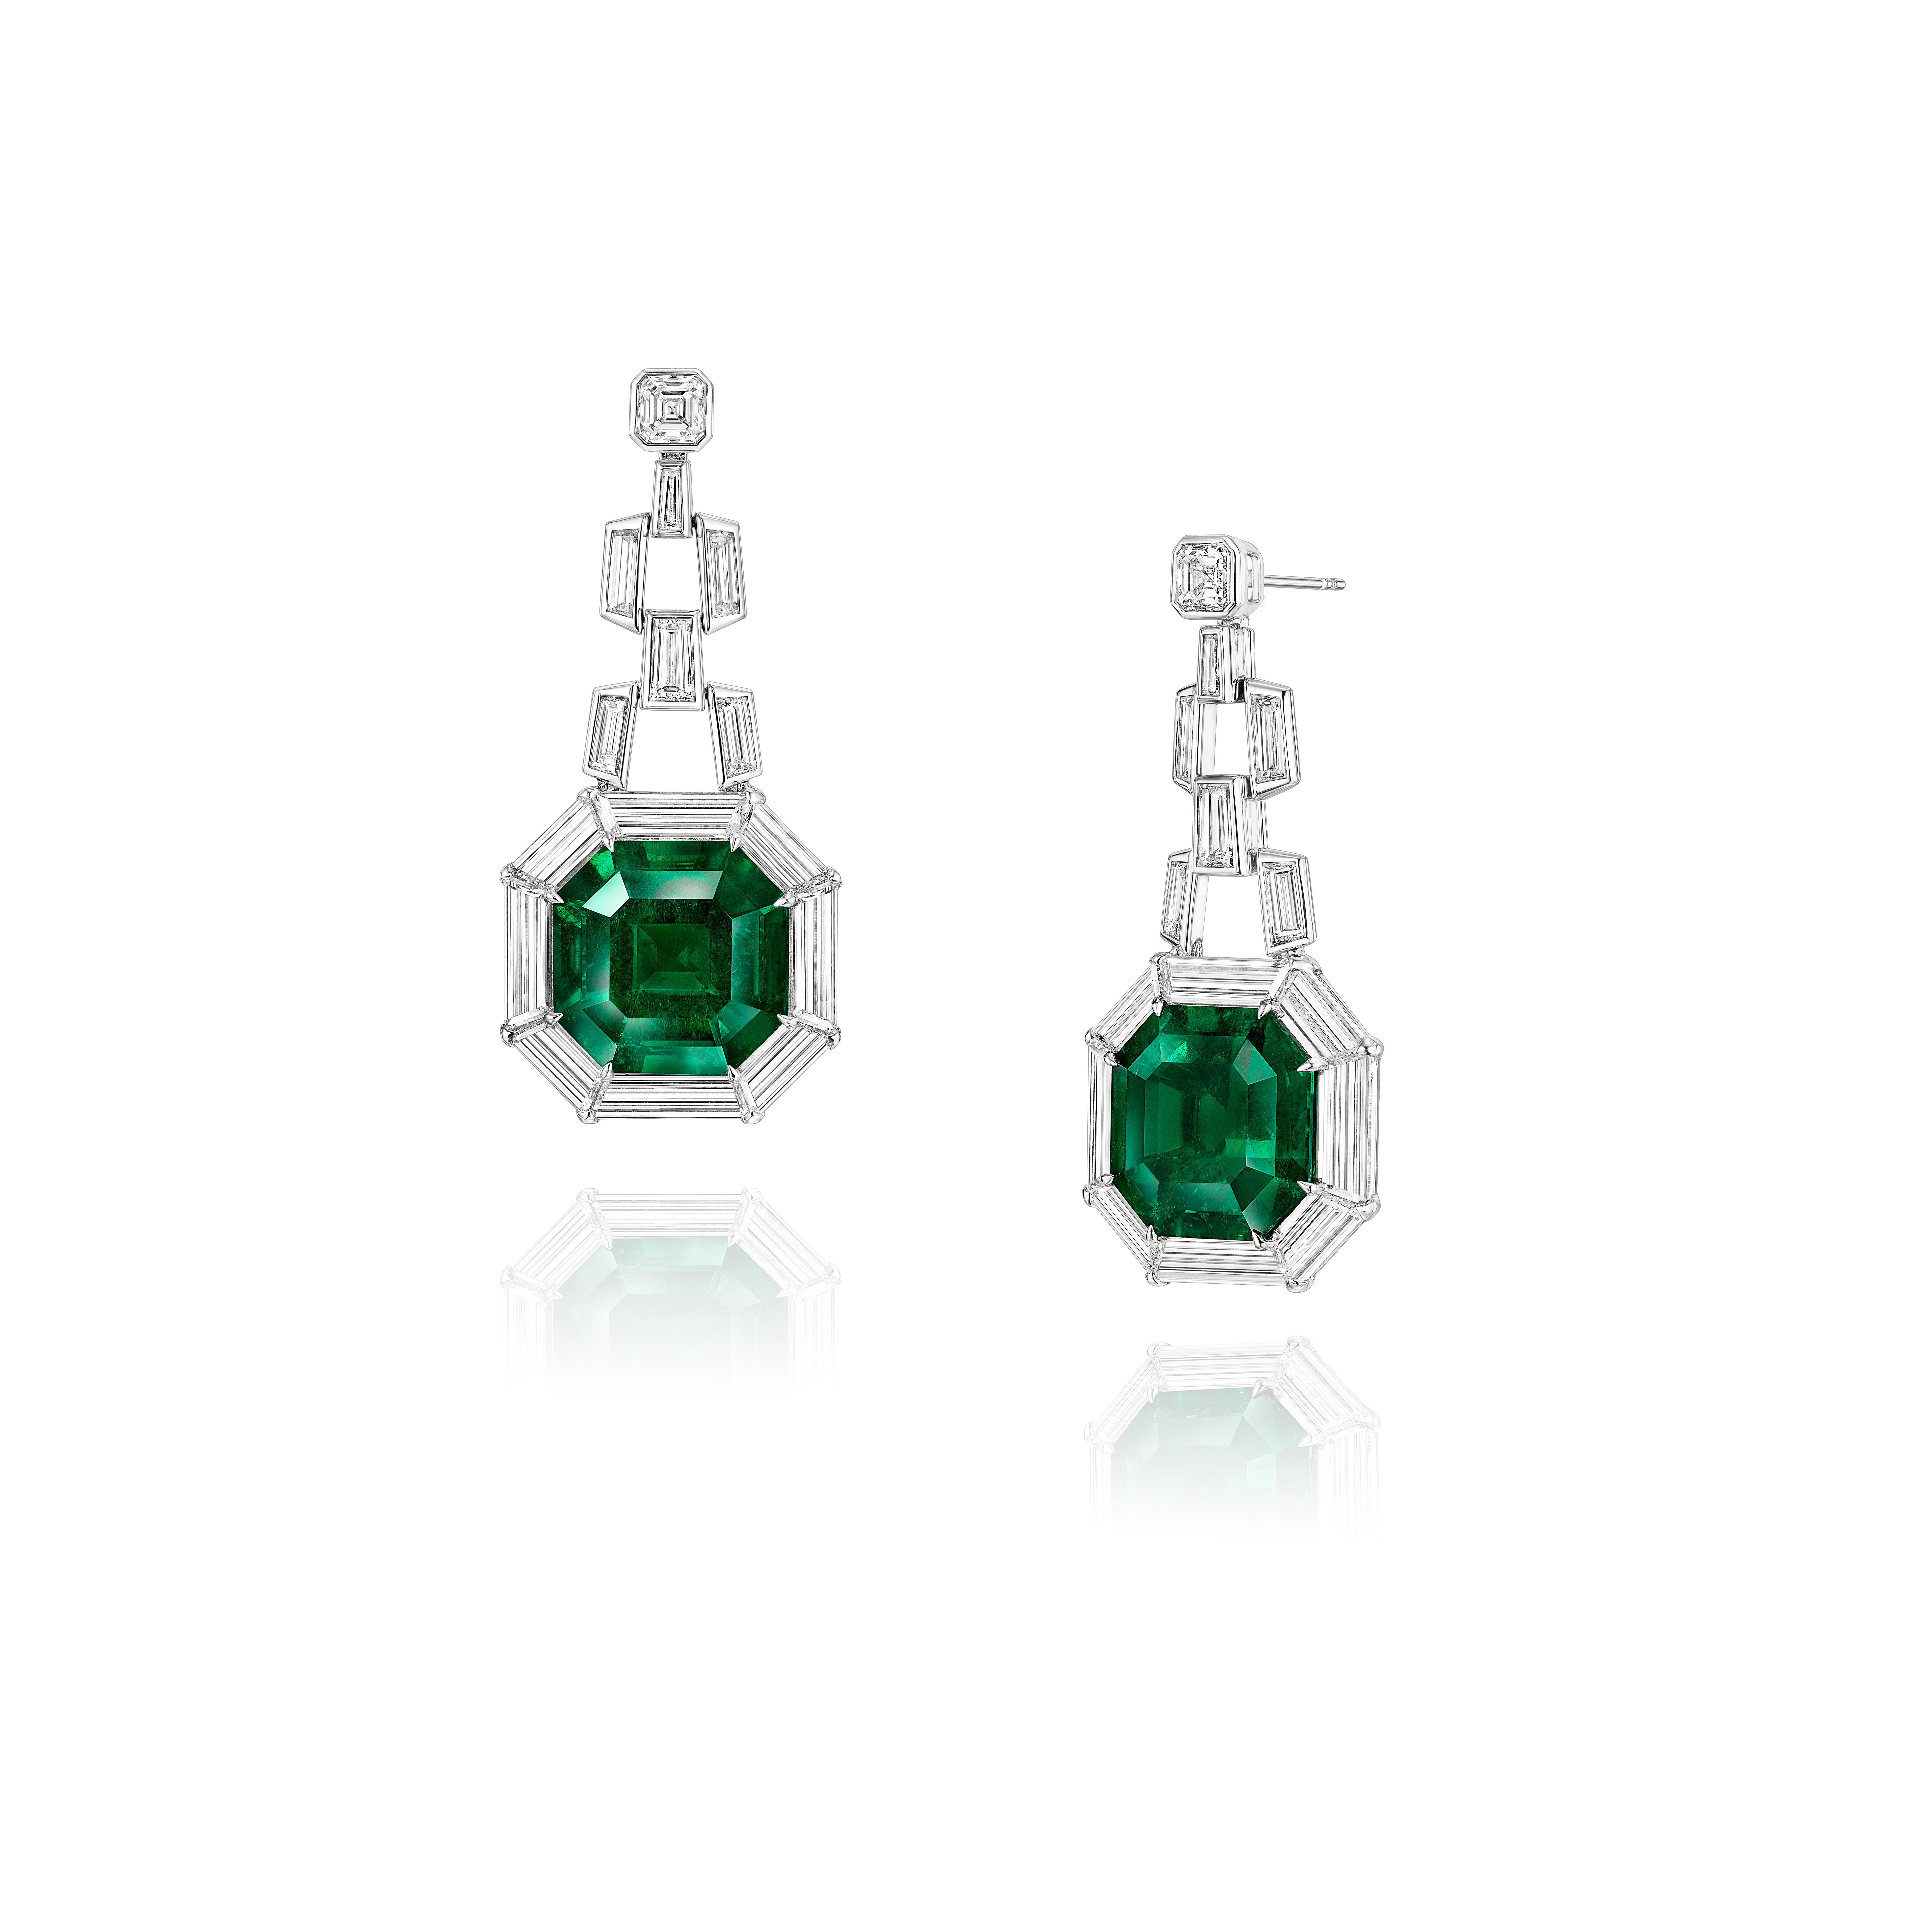 Octagon Cut Gubelin Certified 35.61 Carat Colombian Emerald Art Deco Style Earrings 18k Gold For Sale